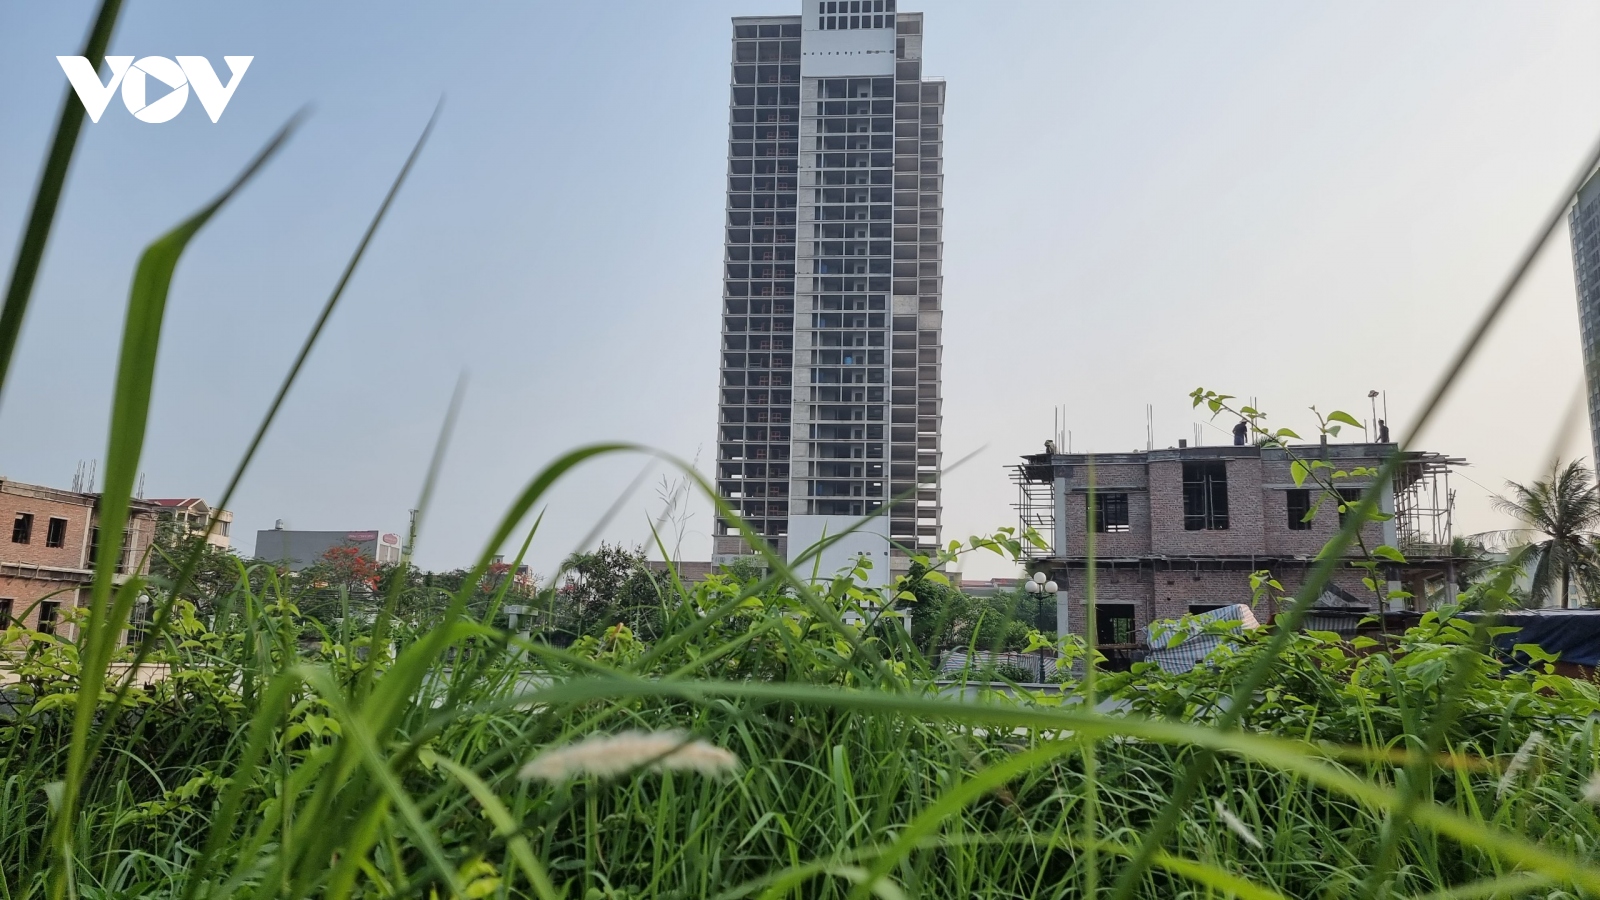 Cận cảnh Dự án Trung tâm thương mại, khách sạn 5 sao bỏ hoang nhiều năm ở Bắc Ninh